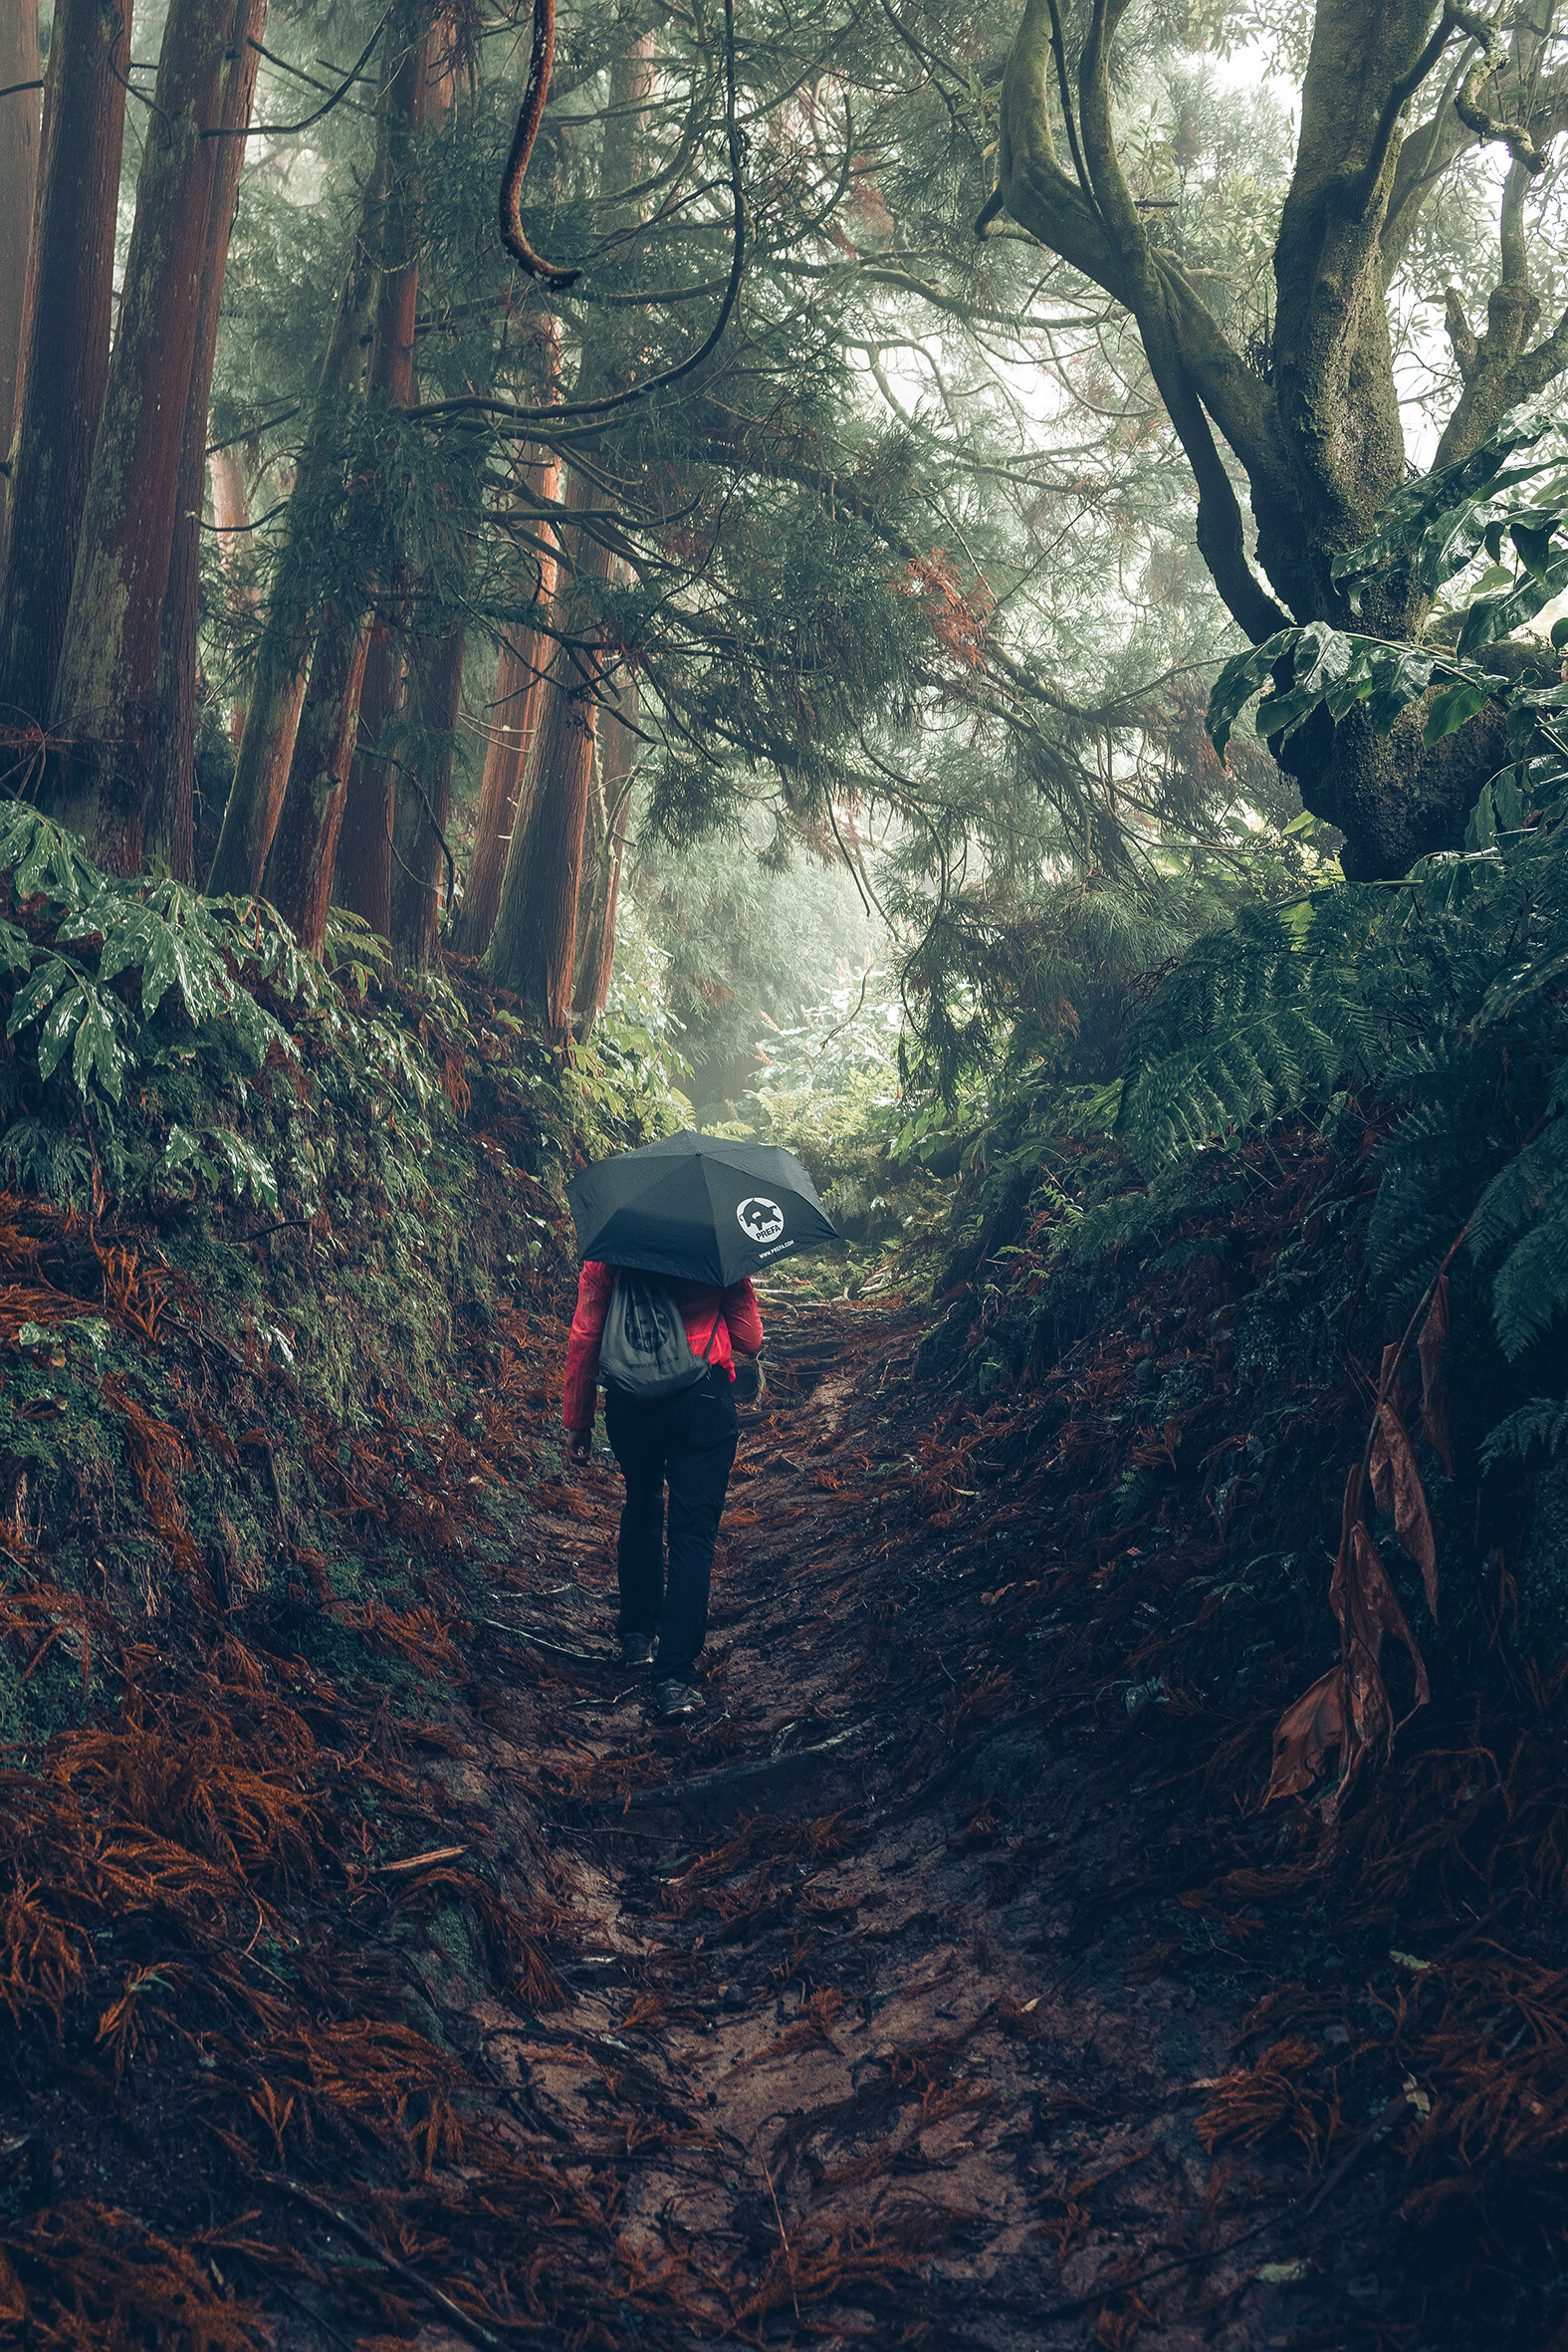 Billede fra skov med kvindelig vandrer i rød jakke med PREFA-paraply og -sportstaske, symboliserer PREFA-miljøbeskyttelse og -bæredygtighed samt kredsløbsøkonomi og genanvendelse.